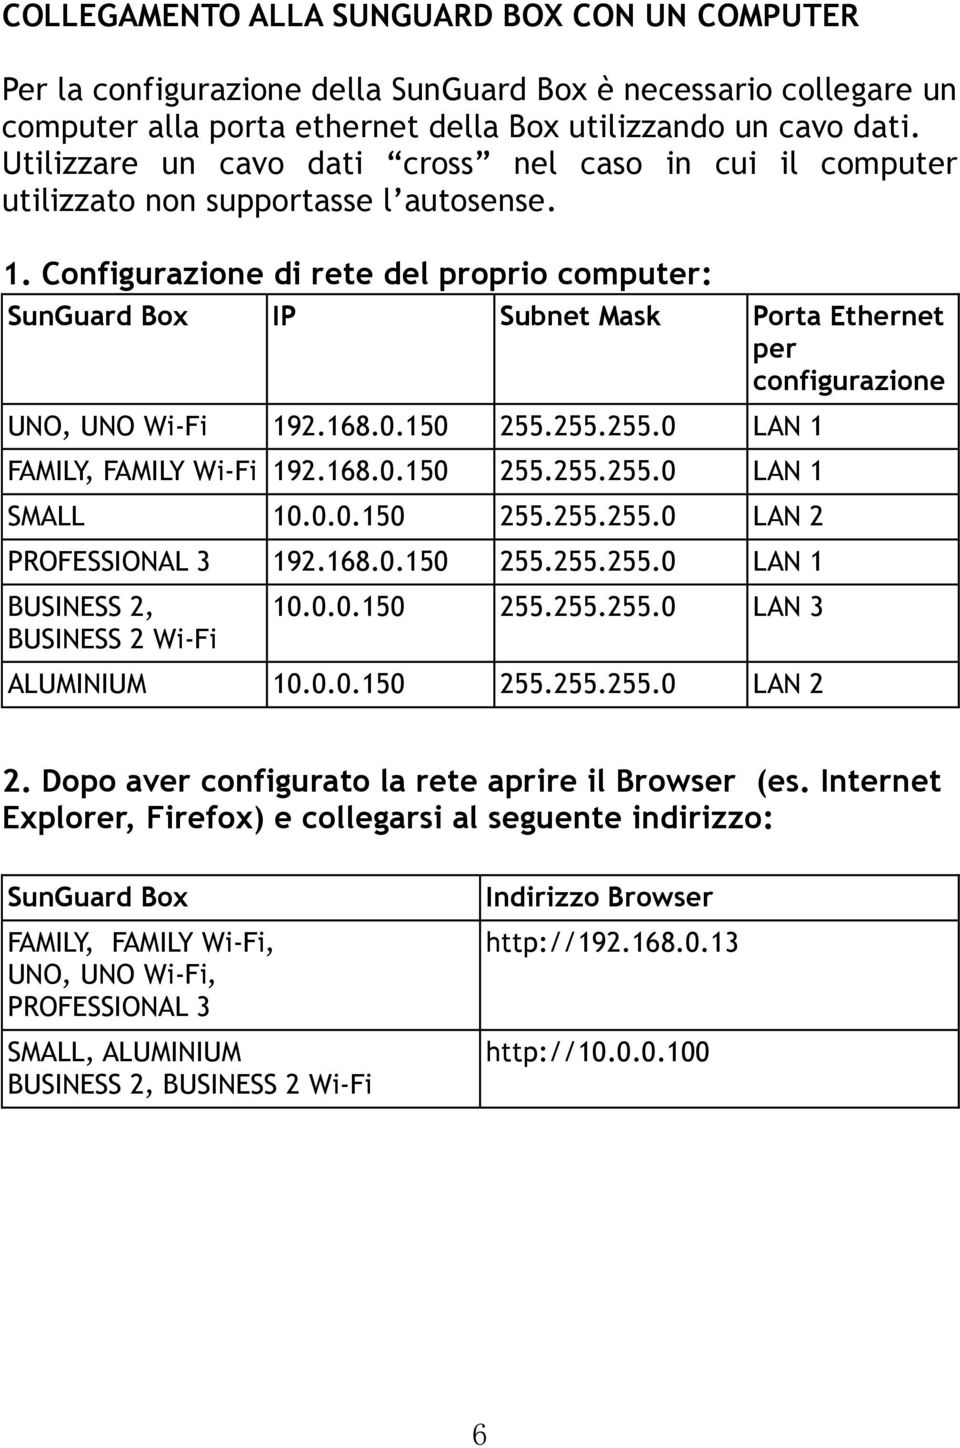 Configurazione di rete del proprio computer: SunGuard Box IP Subnet Mask Porta Ethernet per configurazione UNO, UNO Wi-Fi 192.168.0.150 255.255.255.0 LAN 1 FAMILY, FAMILY Wi-Fi 192.168.0.150 255.255.255.0 LAN 1 SMALL 10.